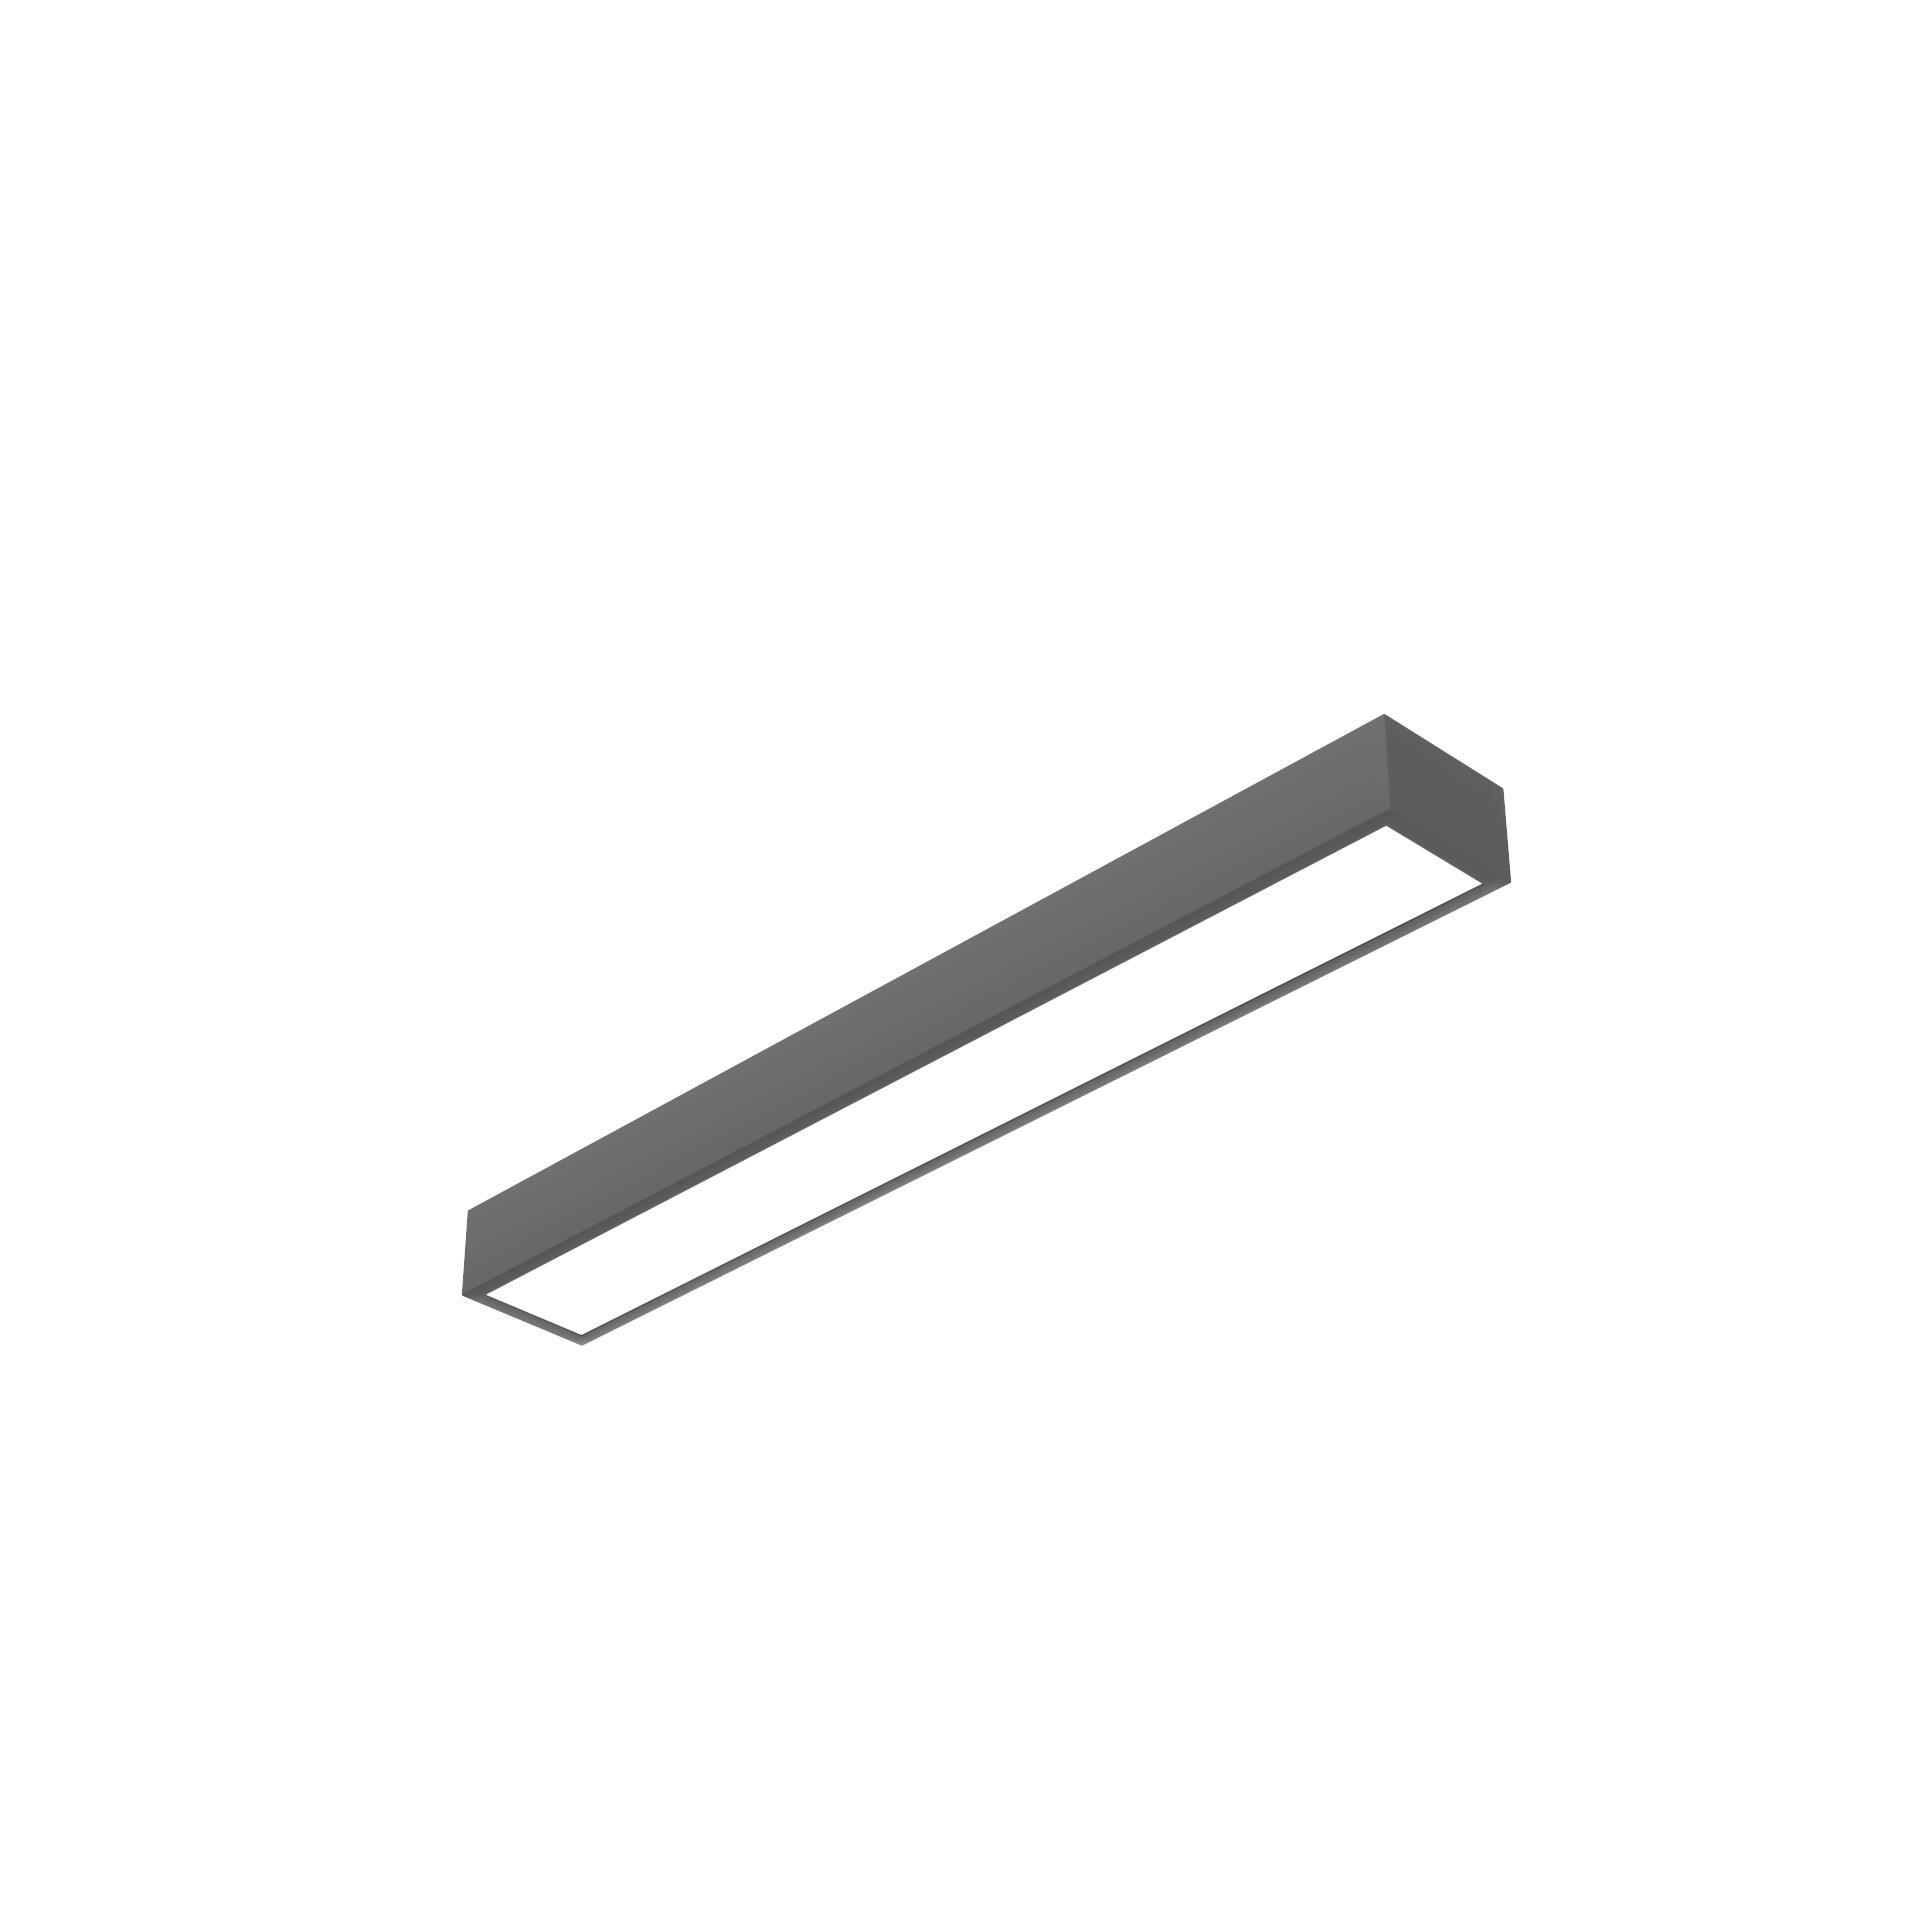 Светодиодный светильник VARTON Gexus Line Up'n'Down 1200x160x100 мм 20 Вт/35 Вт 4000 К RAL9005 черный муар опал-микропризма DALI